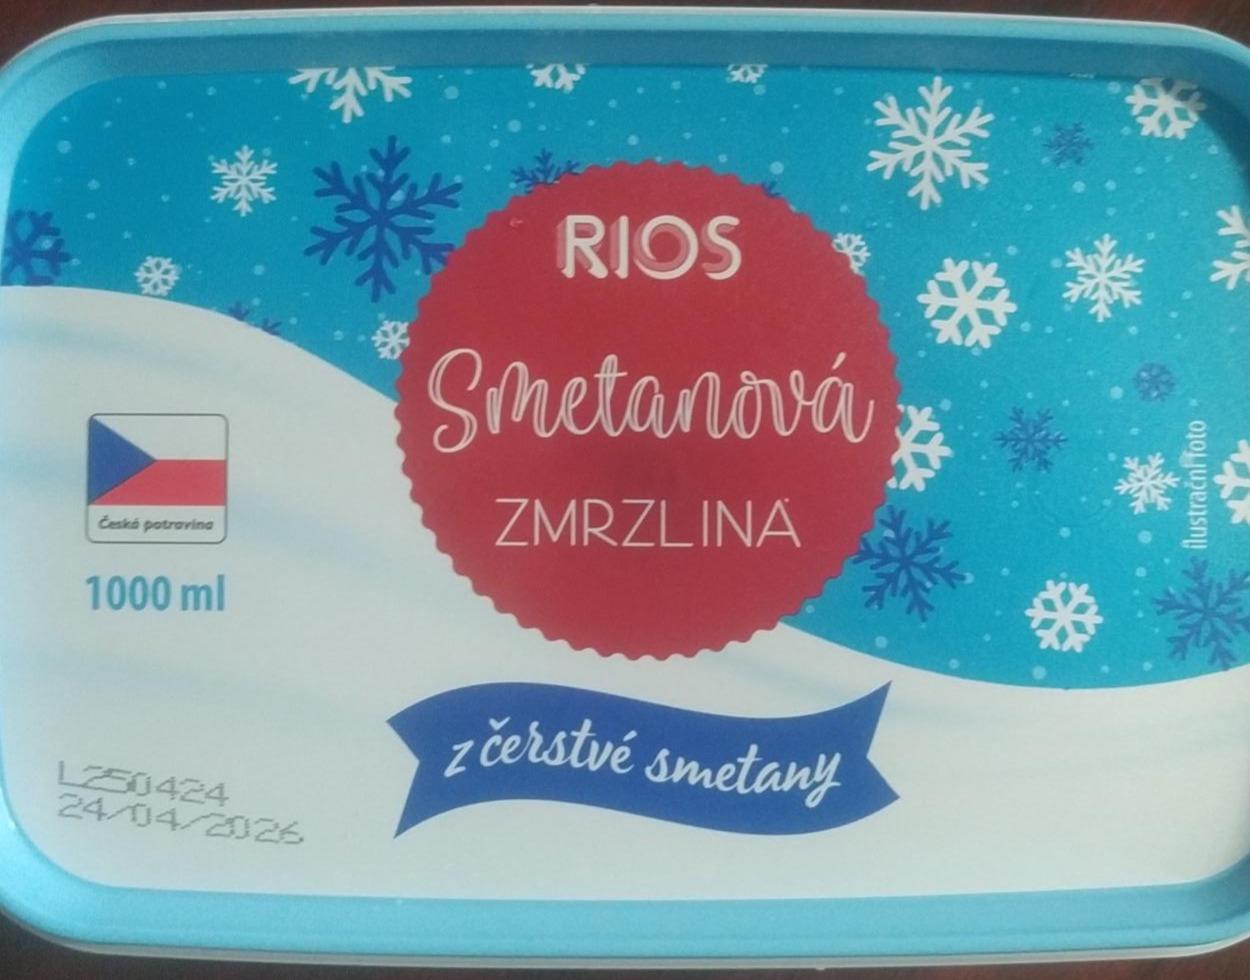 Fotografie - Smetanová zmrzlina z čerstvé smetany Rios